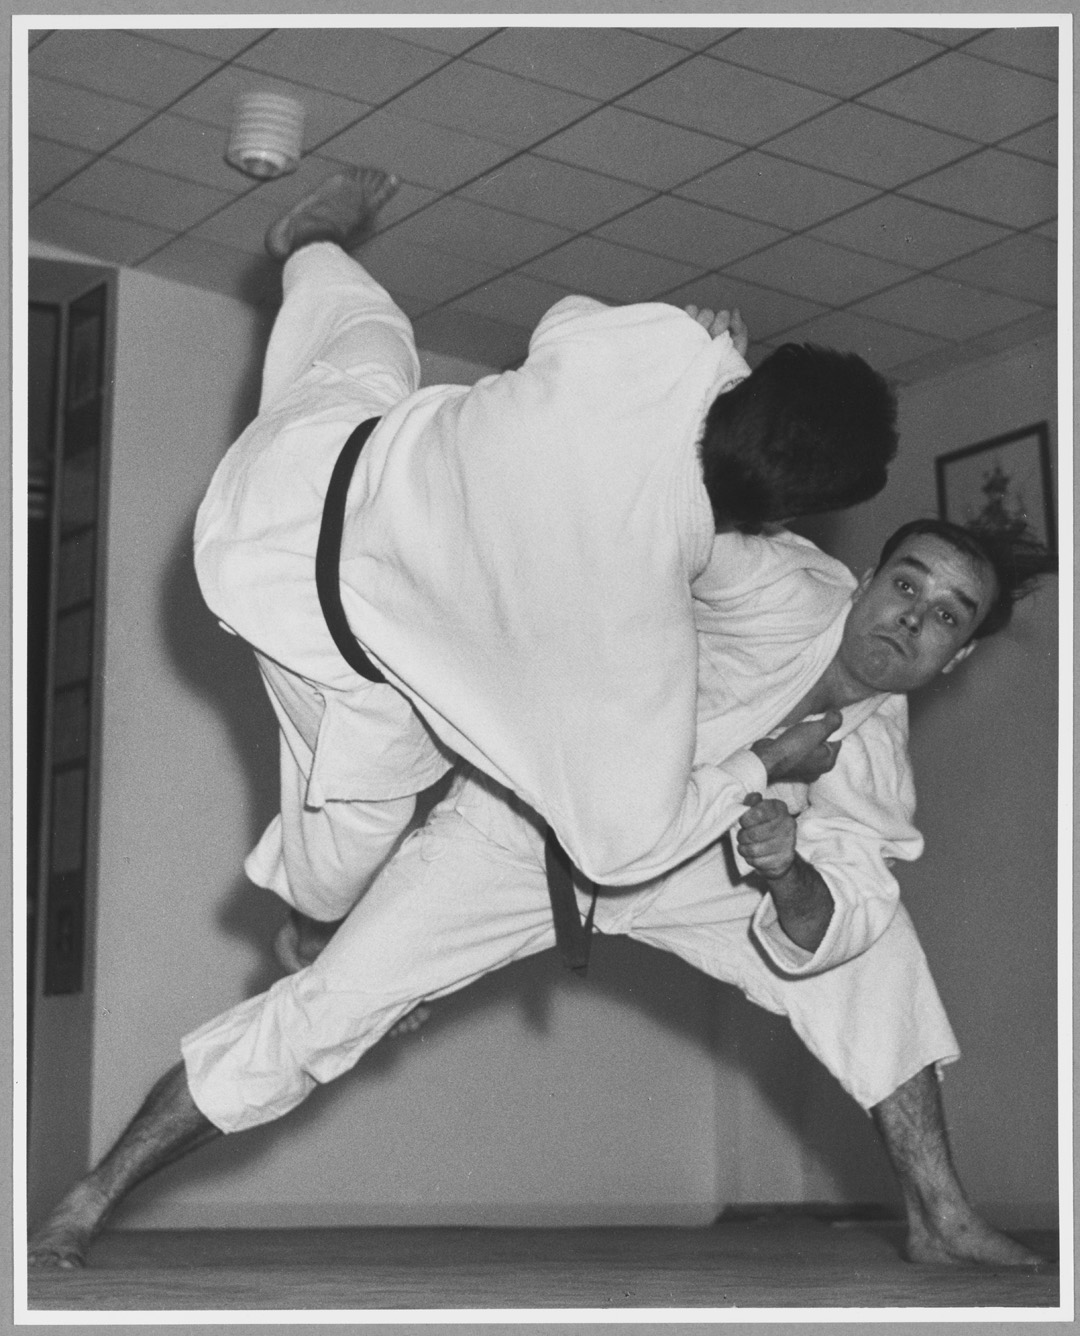 Harry Shunk, "Yves Klein : Démonstration de judo au Japon", 1959